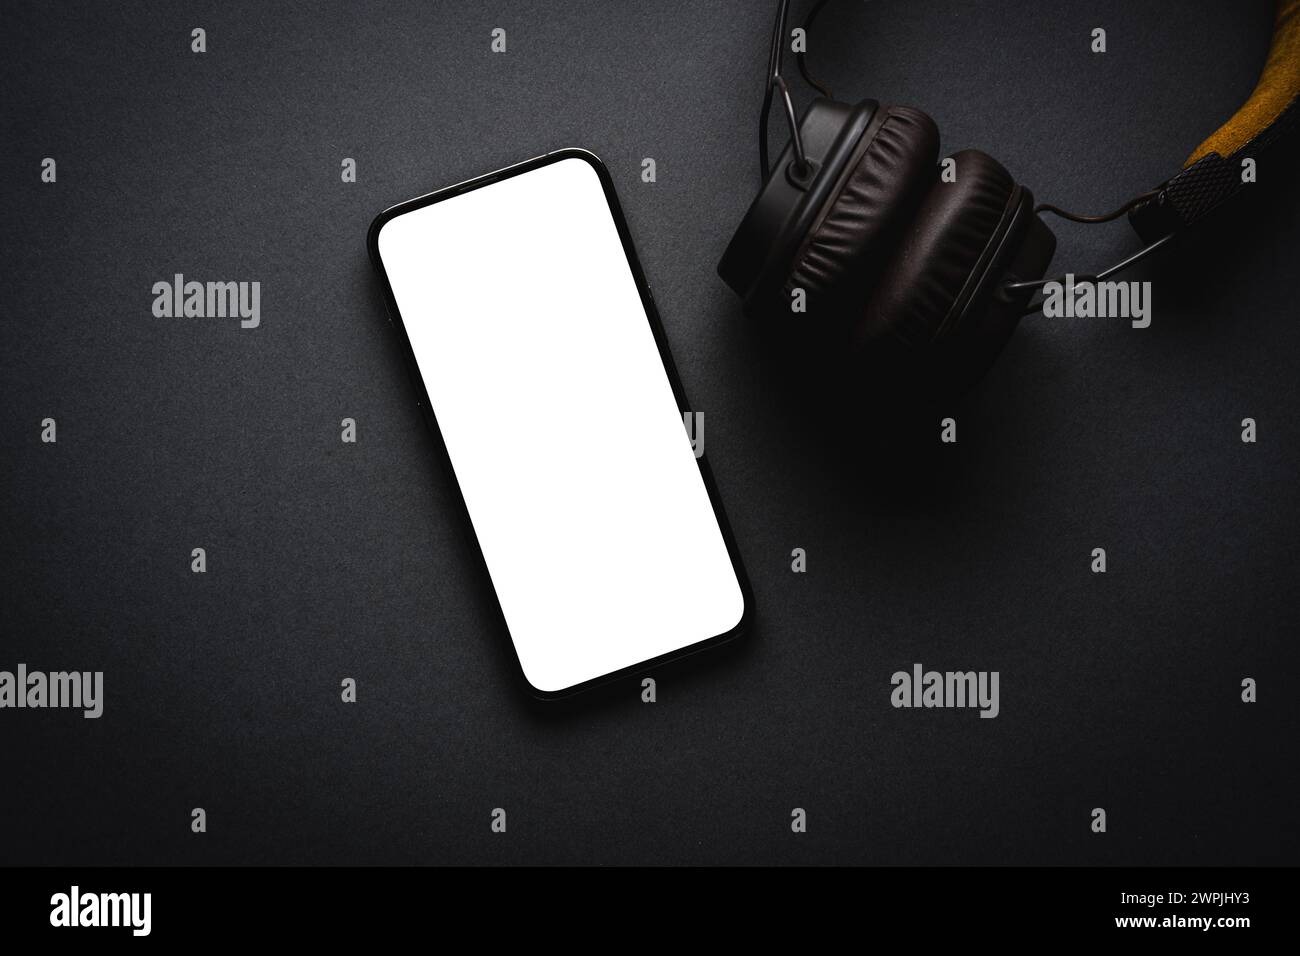 Cuffie wireless avvolgenti in stile retrò e smartphone con schermo vuoto su sfondo grigio scuro Foto Stock